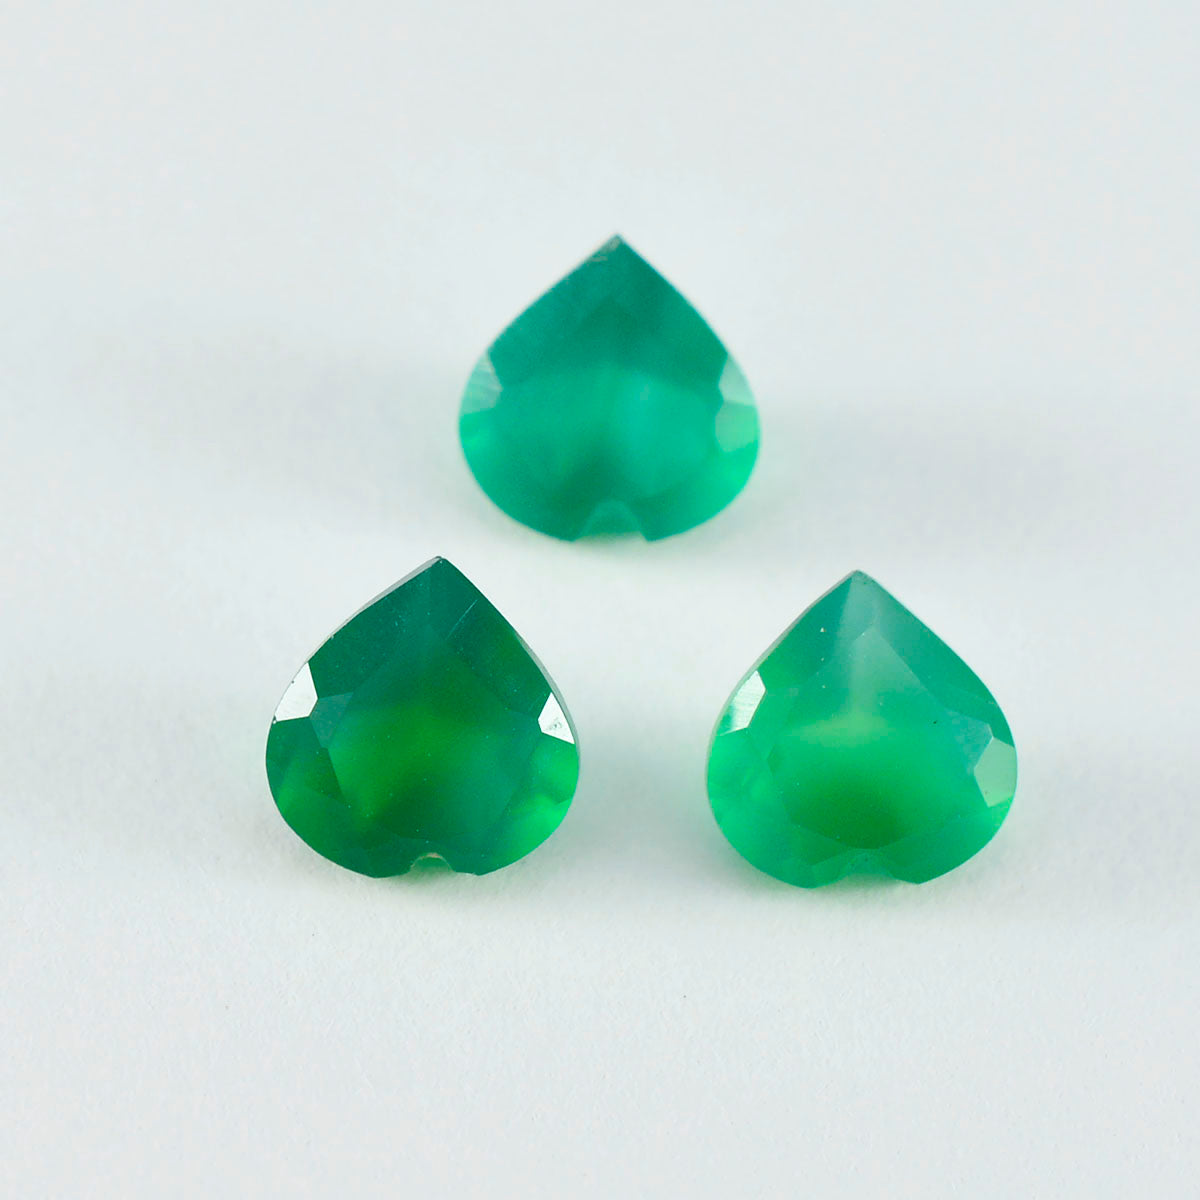 riyogems 1 шт., настоящий зеленый оникс, граненые 7x7 мм, красивые качественные драгоценные камни в форме сердца